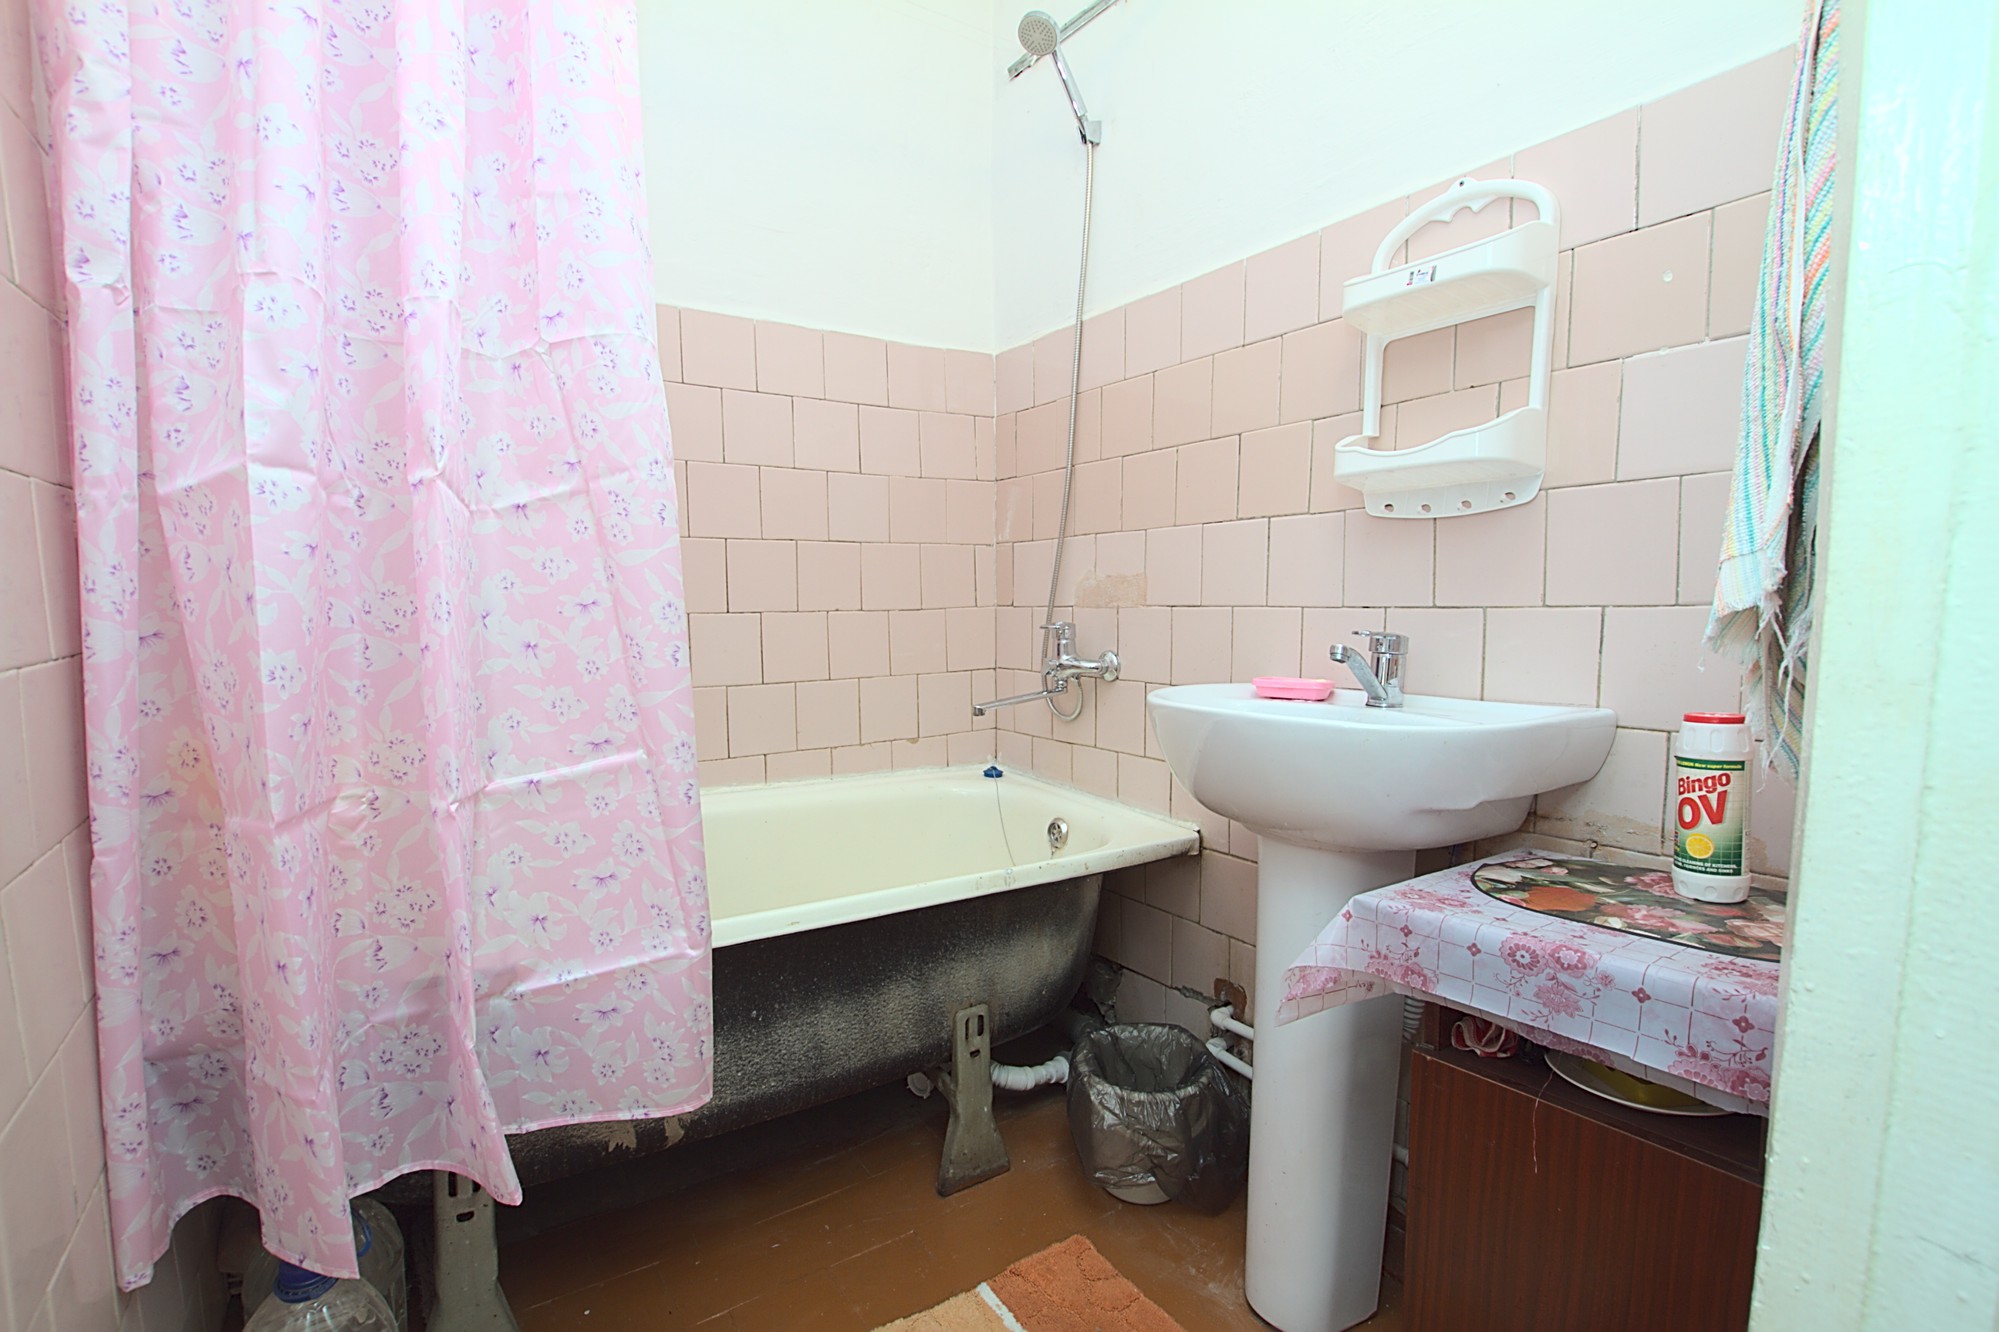 1 комната в аренду в Кишиневе - Chisinau, E. Coca 17